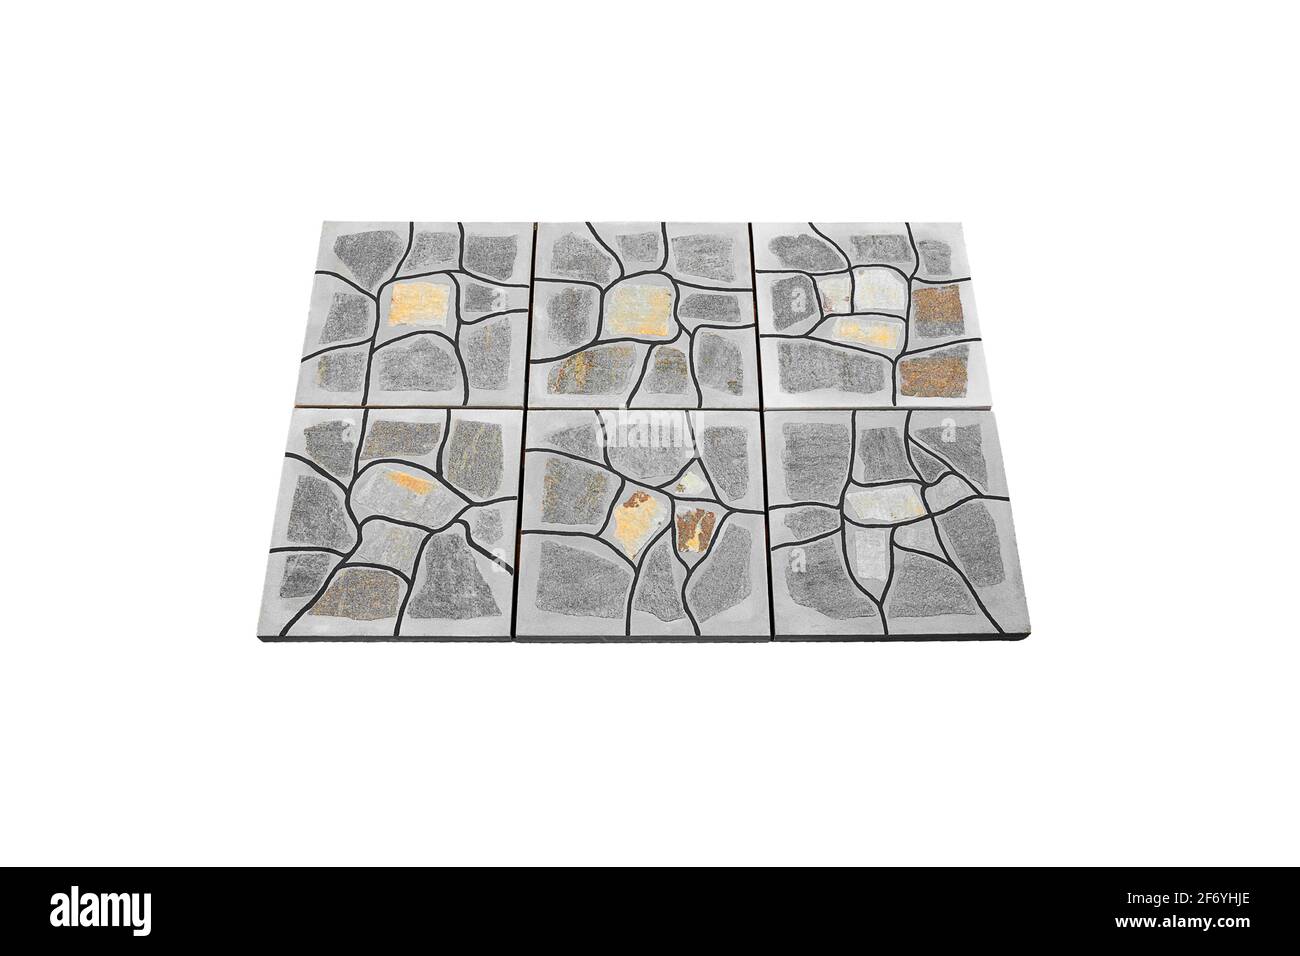 Piedra de pavimentación gris de hormigón aislada sobre fondo blanco. El azulejo tiene una superficie superior plana sin chaflán y se ajusta cómodamente al pavimentar. Foto de stock